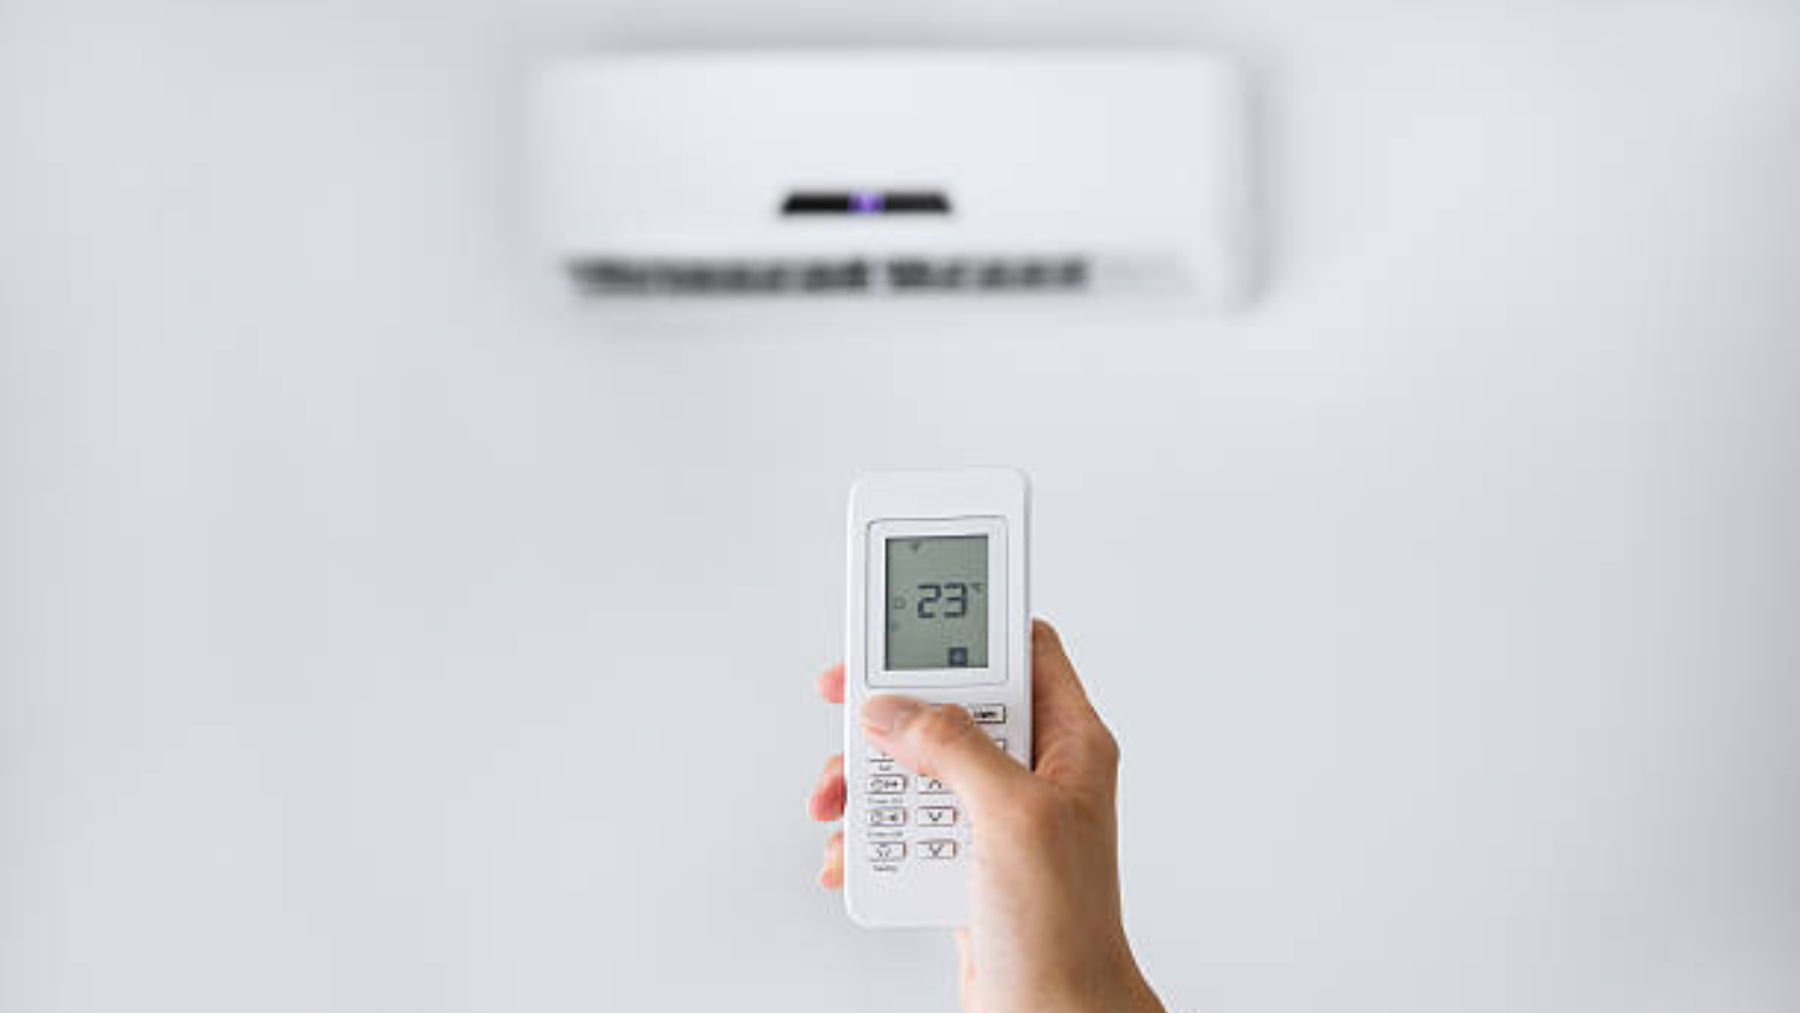 La OCU explica que la bomba de calor es la opción ideal para calentar el hogar